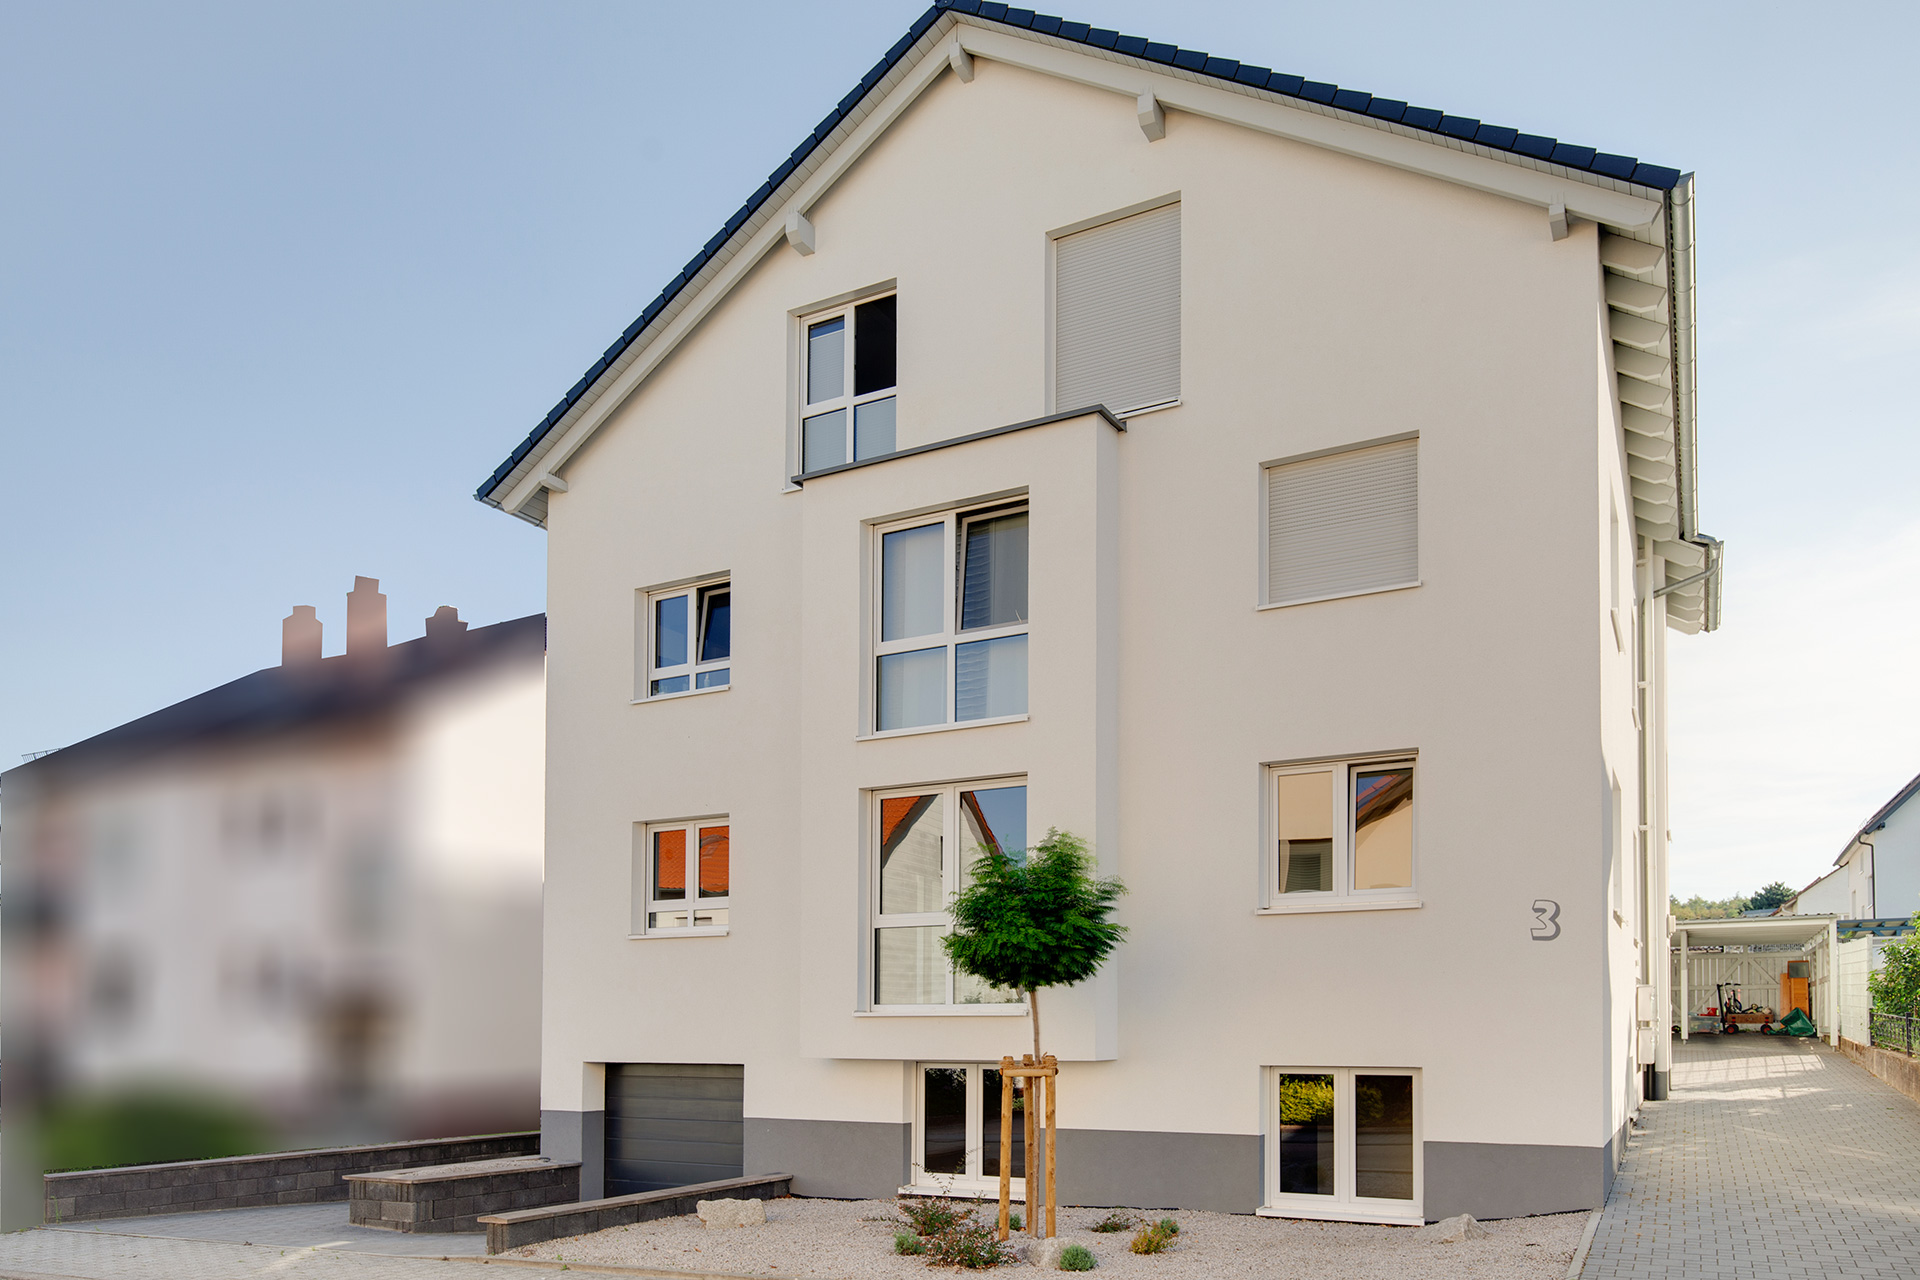 Objekt 114 | Wohnung über 3 Etagen mit Garten und Carport-Stellplatz in Ettlingen-Spessart als Kapitalanlage